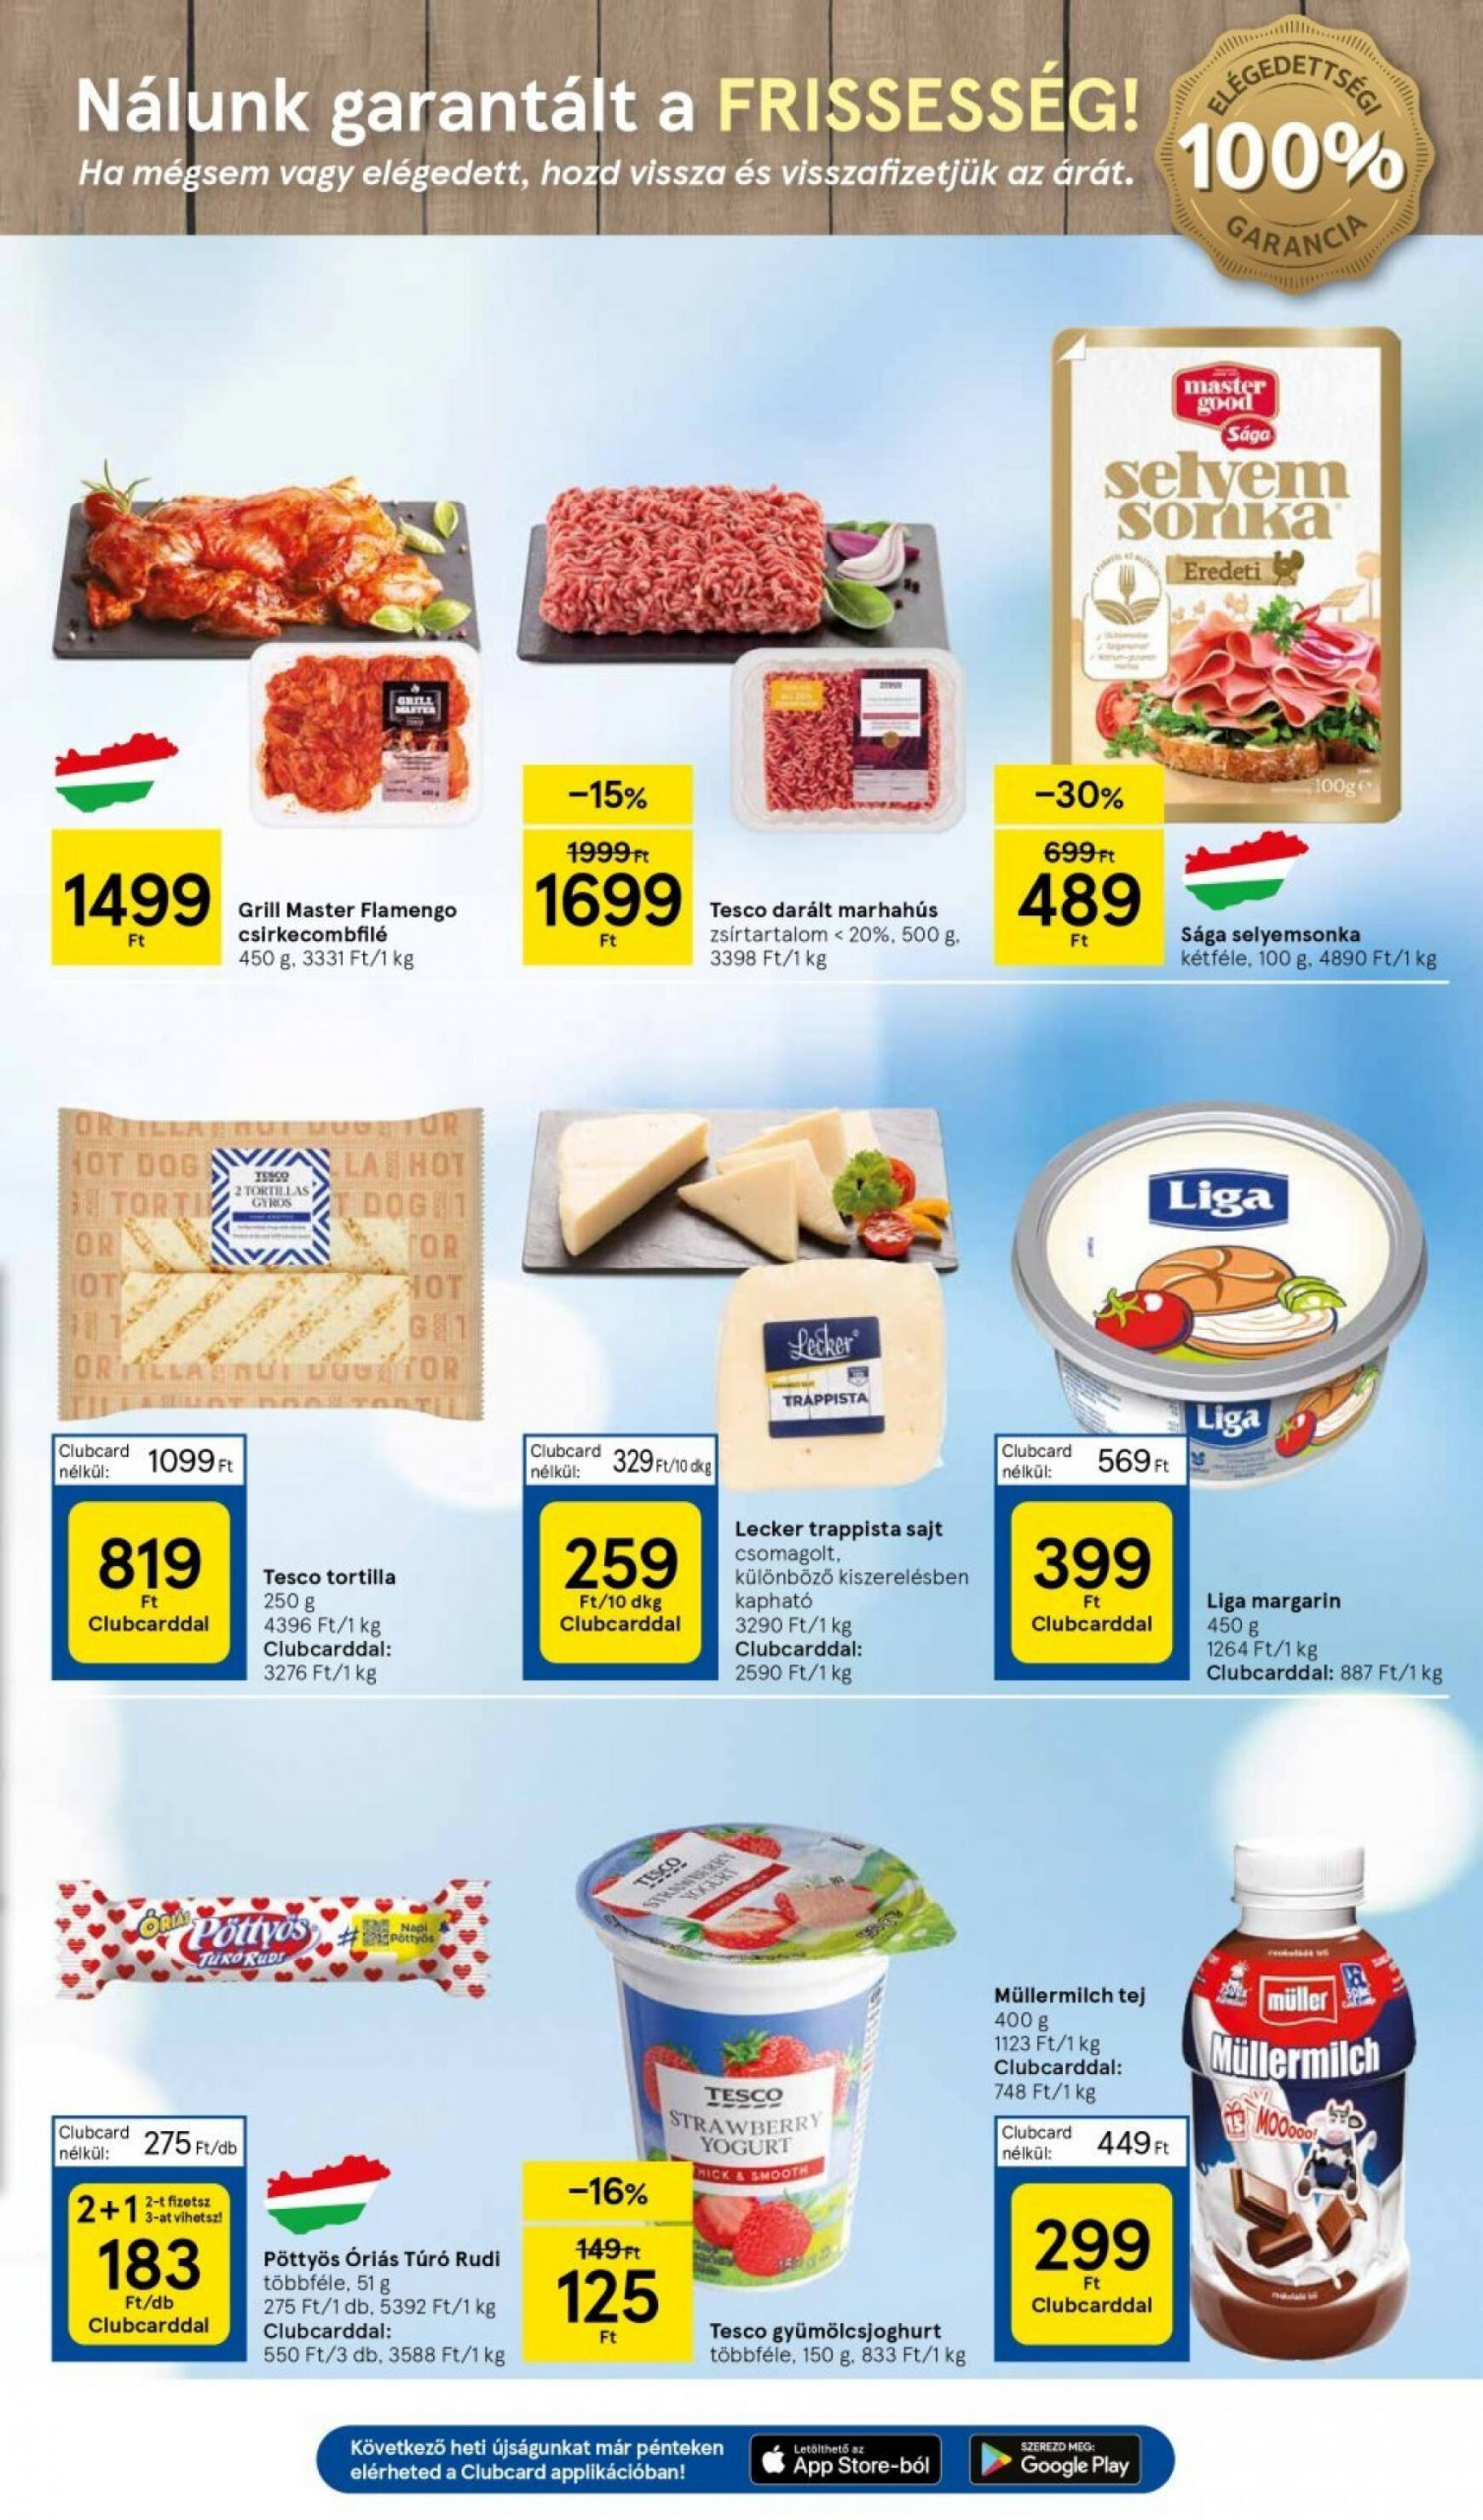 tesco - Aktuális újság Tesco szupermarket 05.16. - 05.22. - page: 3